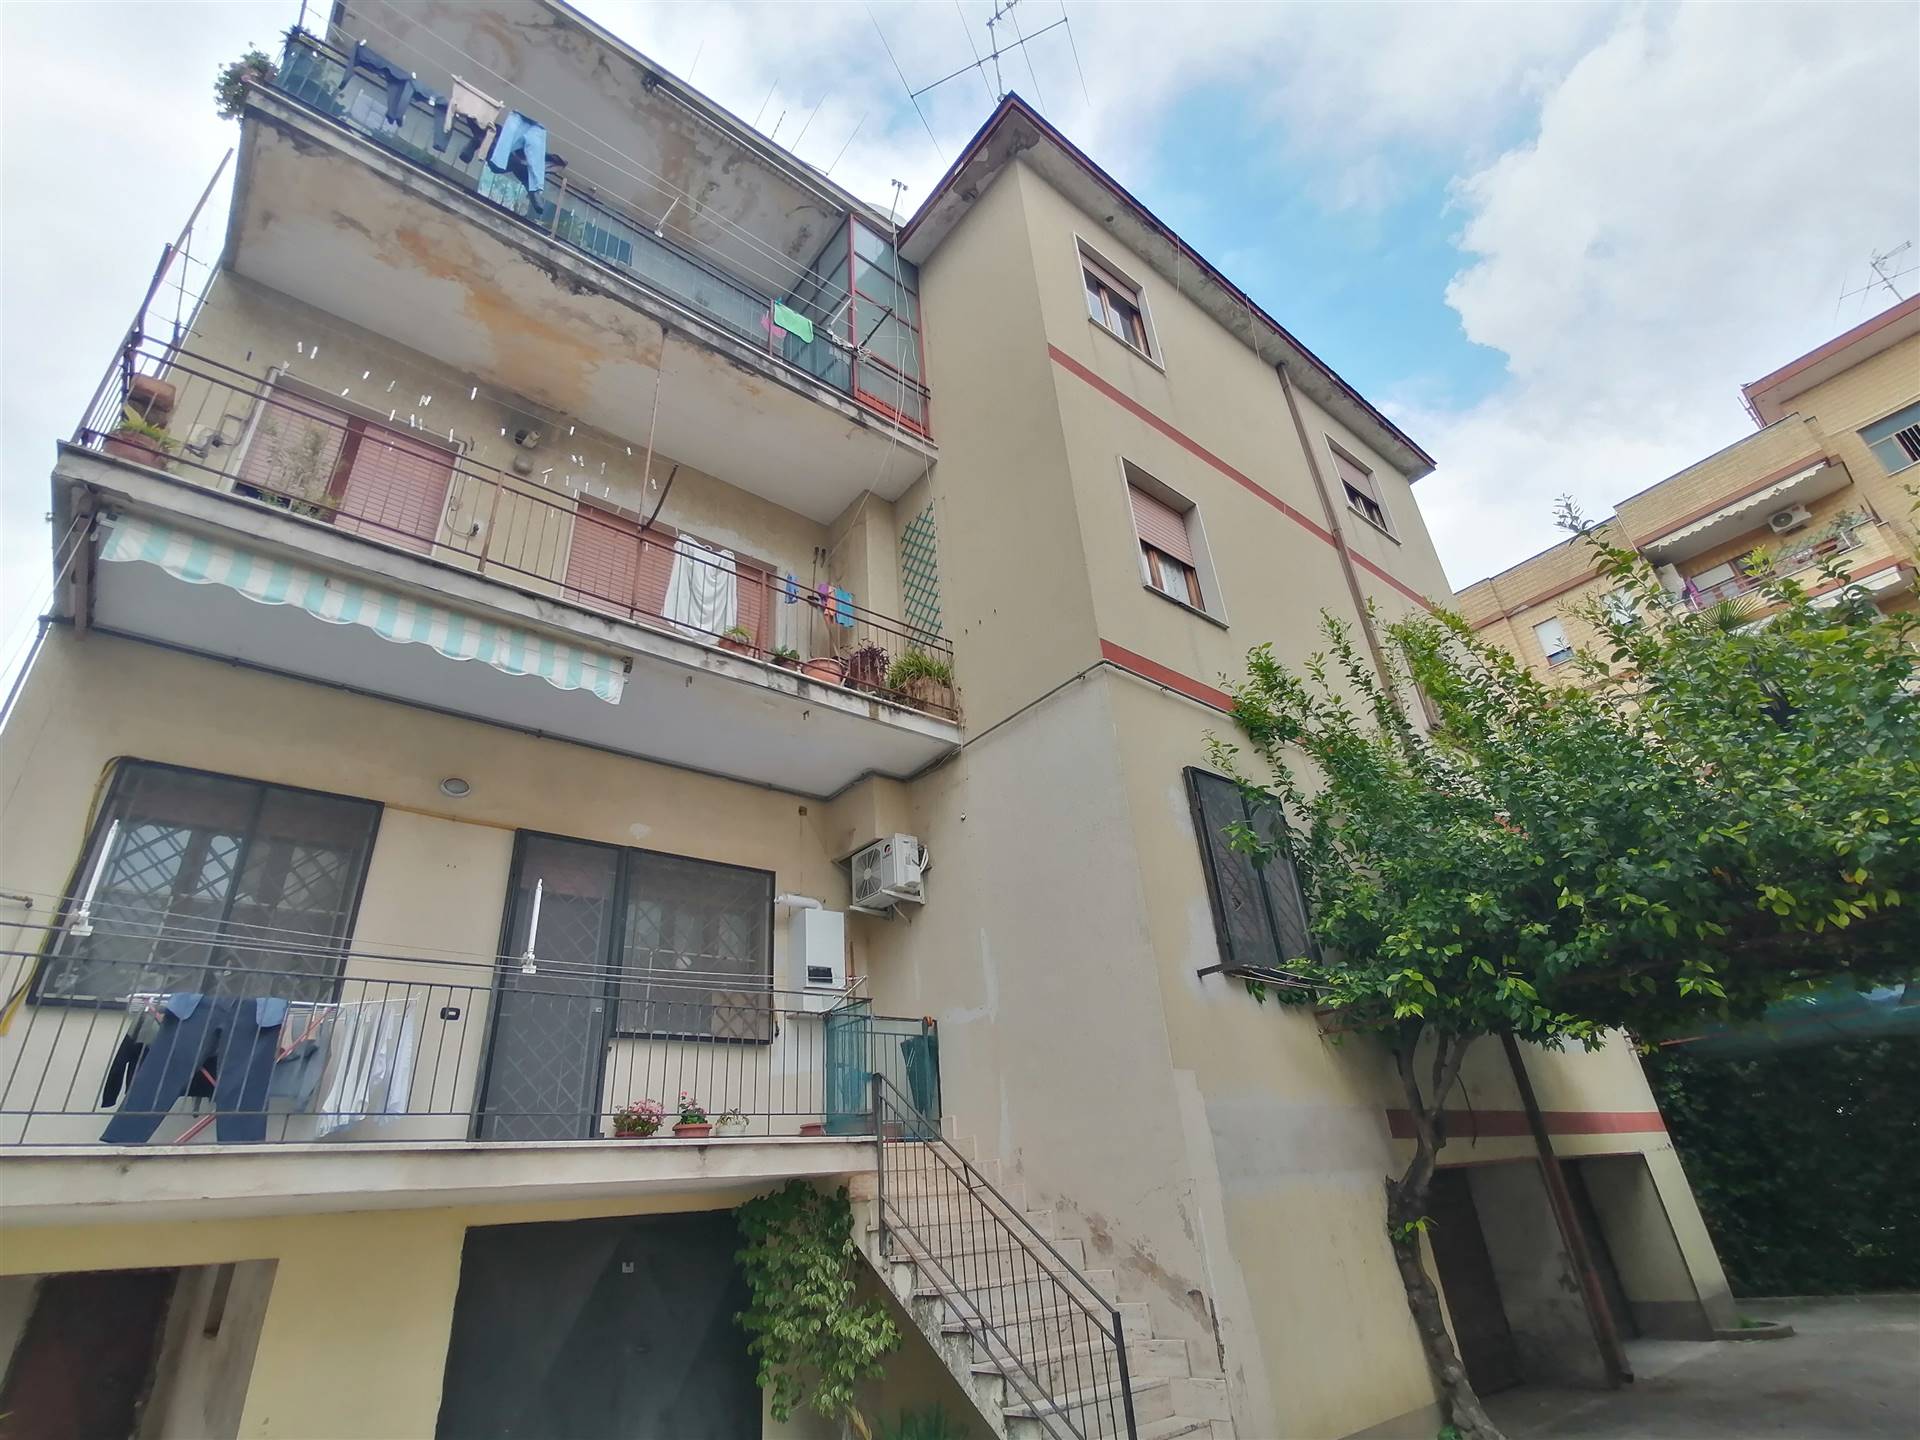 Appartamento in vendita a Santa Maria Capua Vetere, 3 locali, prezzo € 70.000 | PortaleAgenzieImmobiliari.it